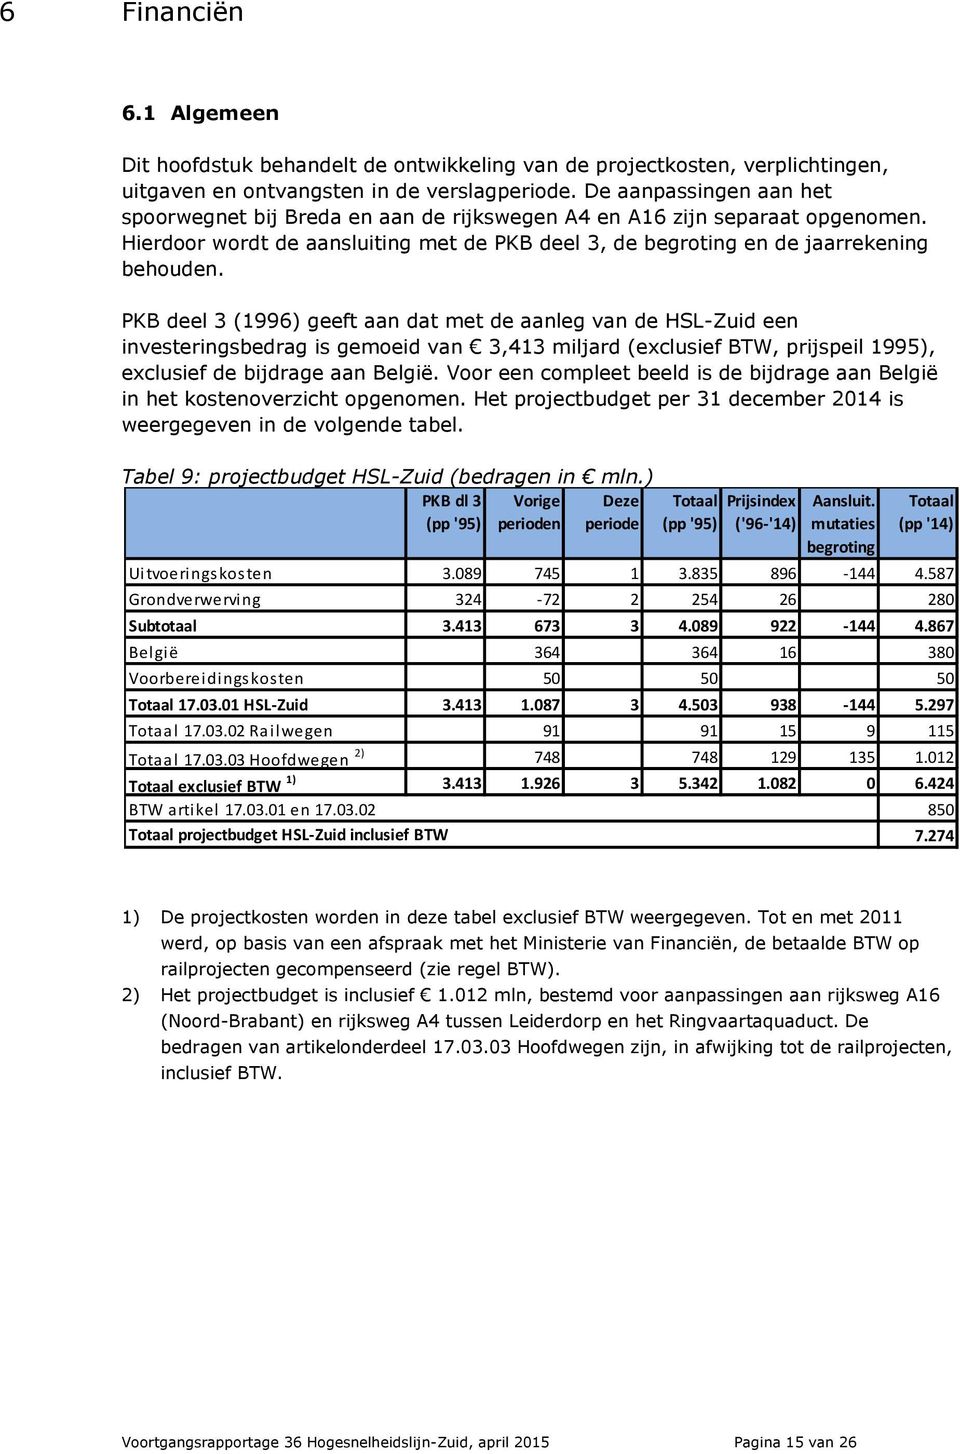 PKB deel 3 (1996) geeft aan dat met de aanleg van de HSL-Zuid een investeringsbedrag is gemoeid van 3,413 miljard (exclusief BTW, prijspeil 1995), exclusief de bijdrage aan België.